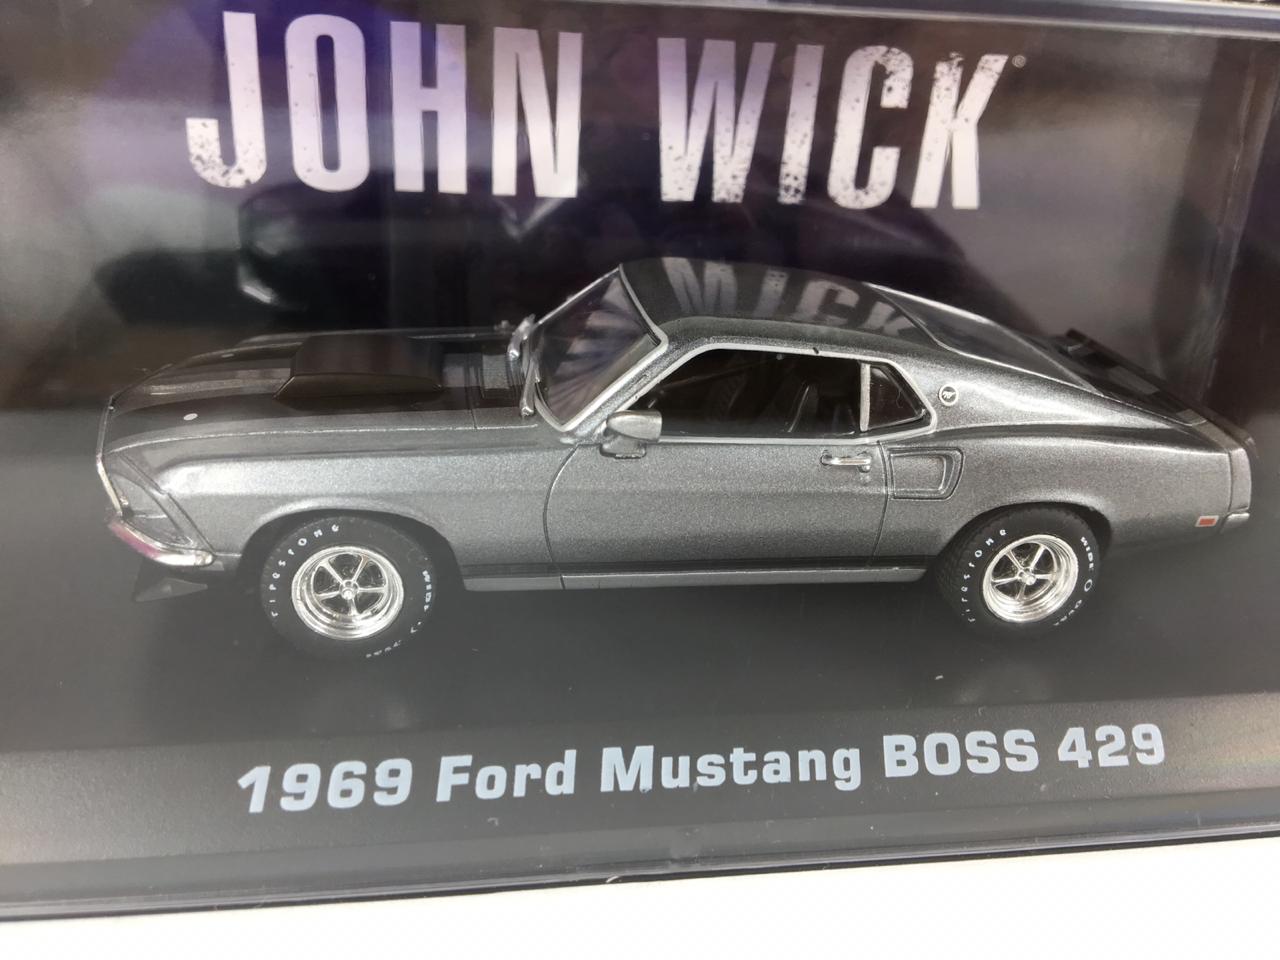 Miniatura Ford Mustang Boss 1969 John Wick 2014 1/43 Greenlight